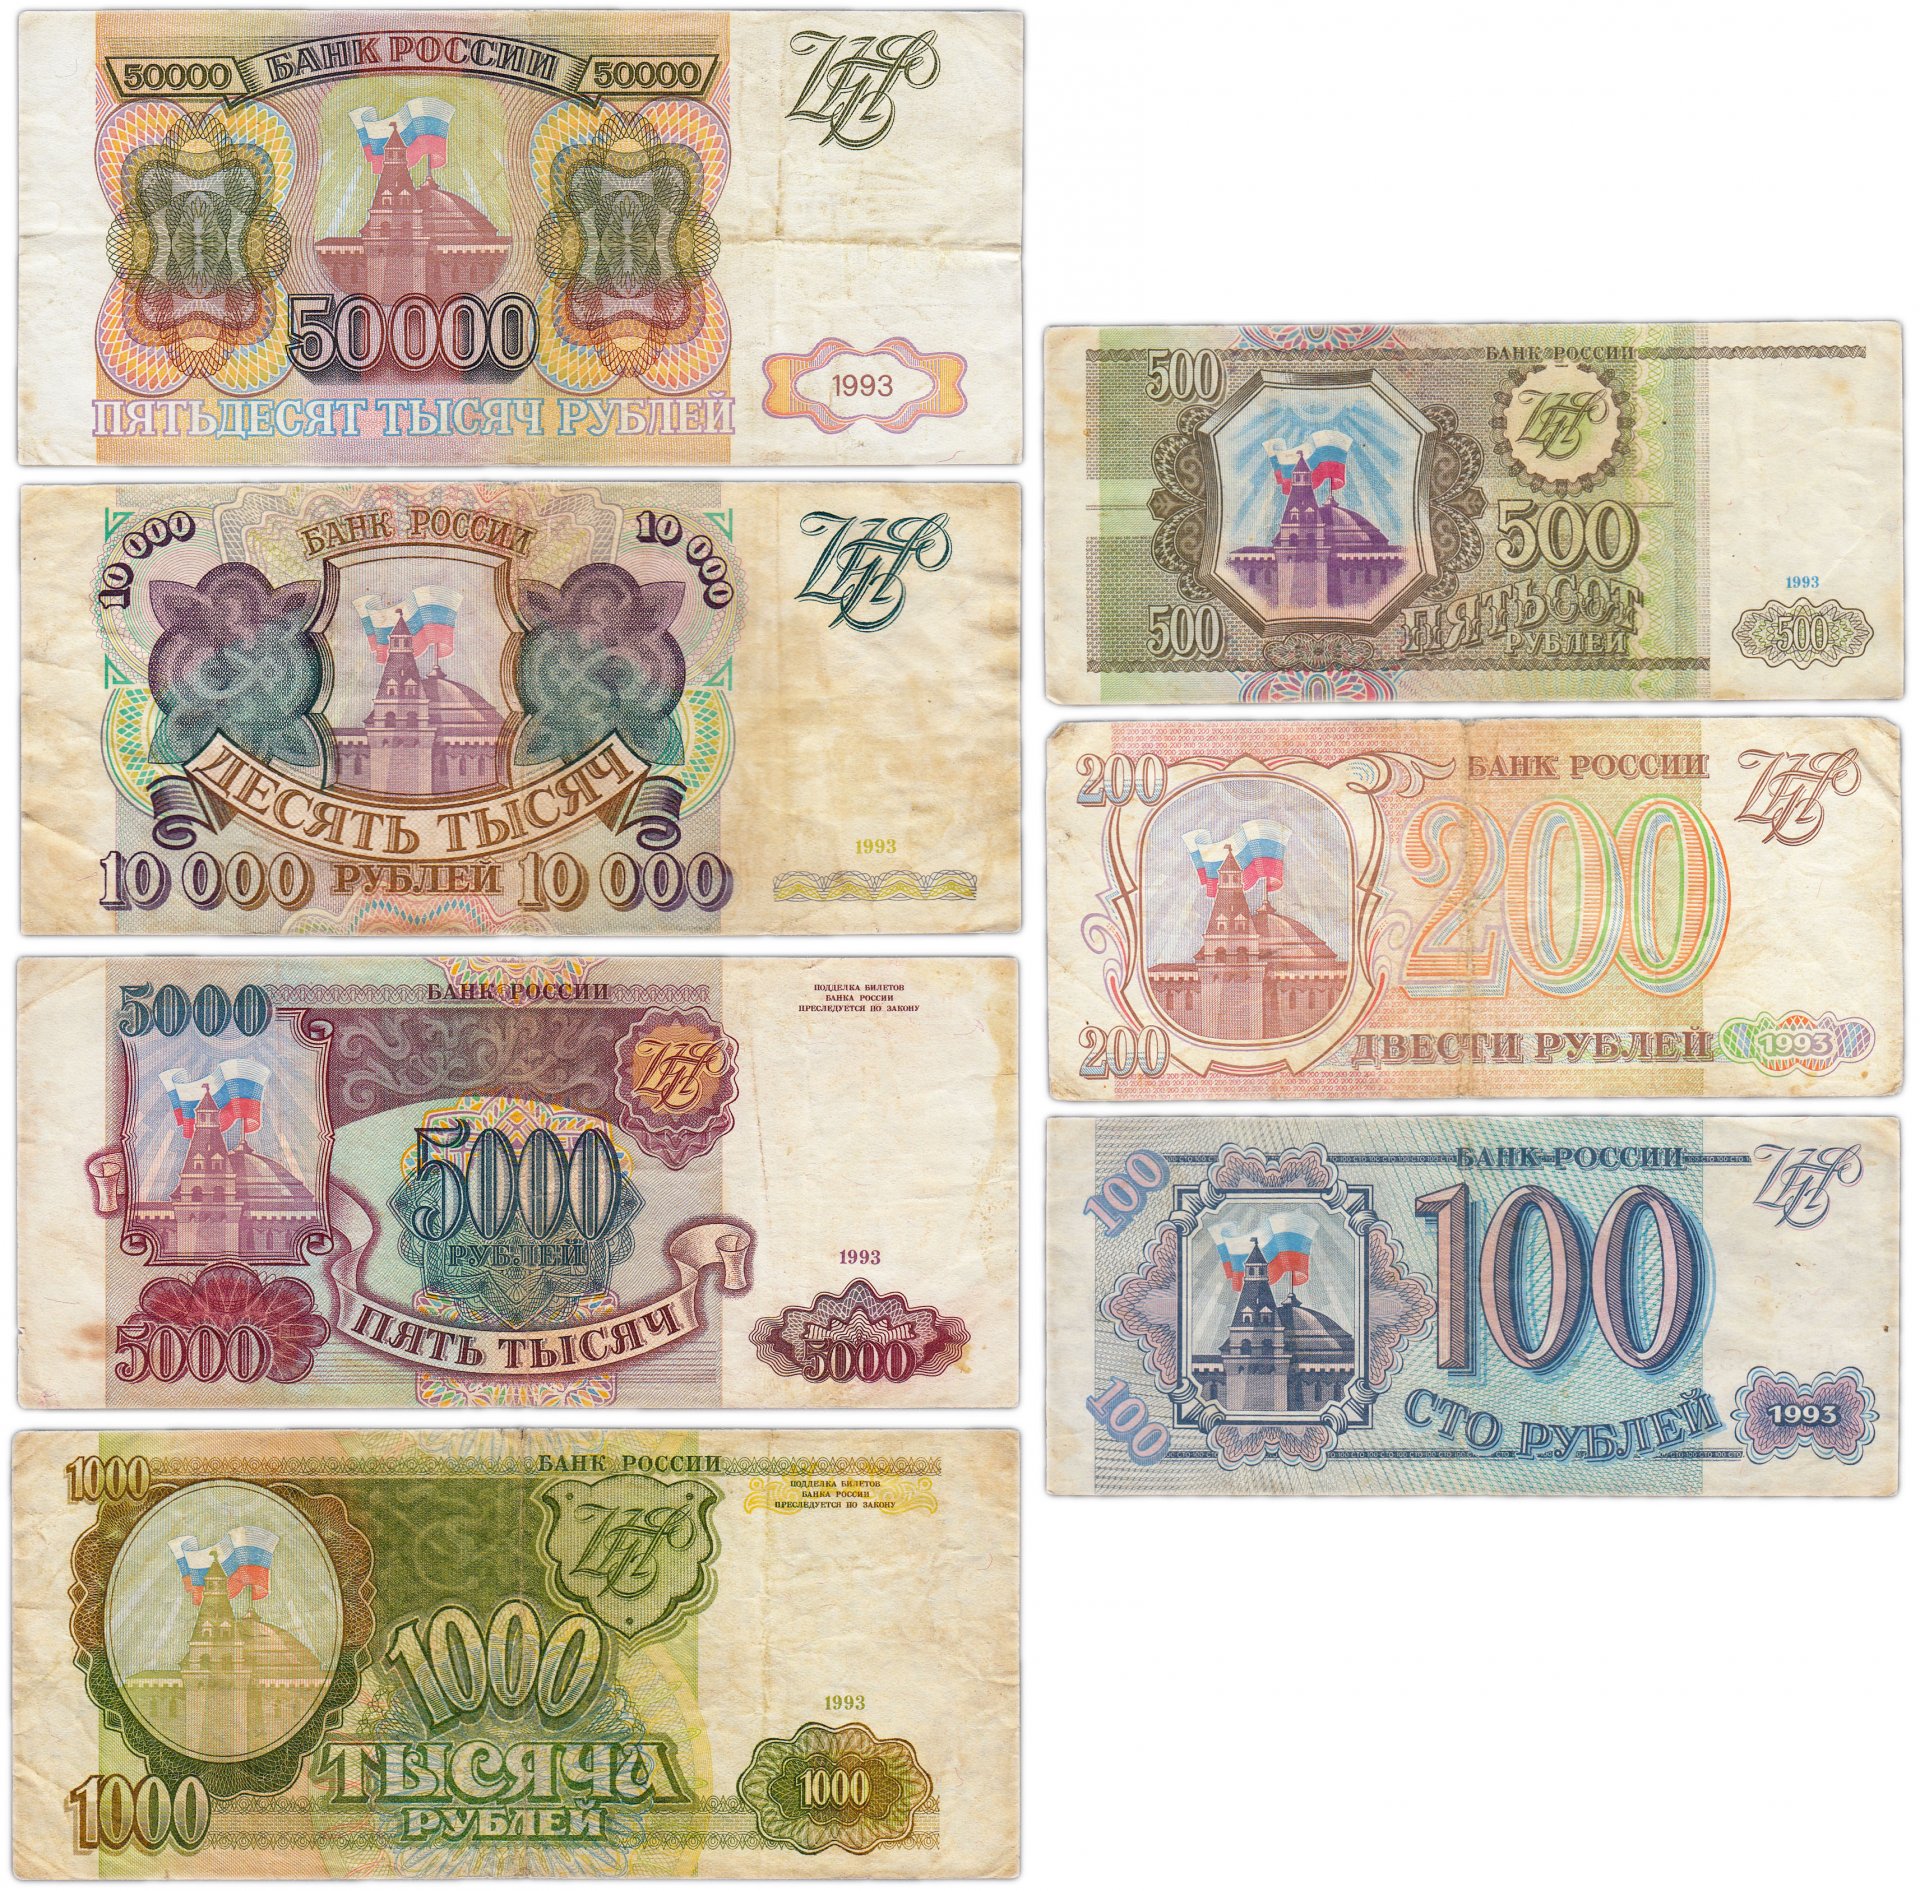 Обмен 1000 рублей. Деньги 1993 года. Купюры 1993 года. Бумажные деньги 1993 года. Банкноты образца 1993 года.